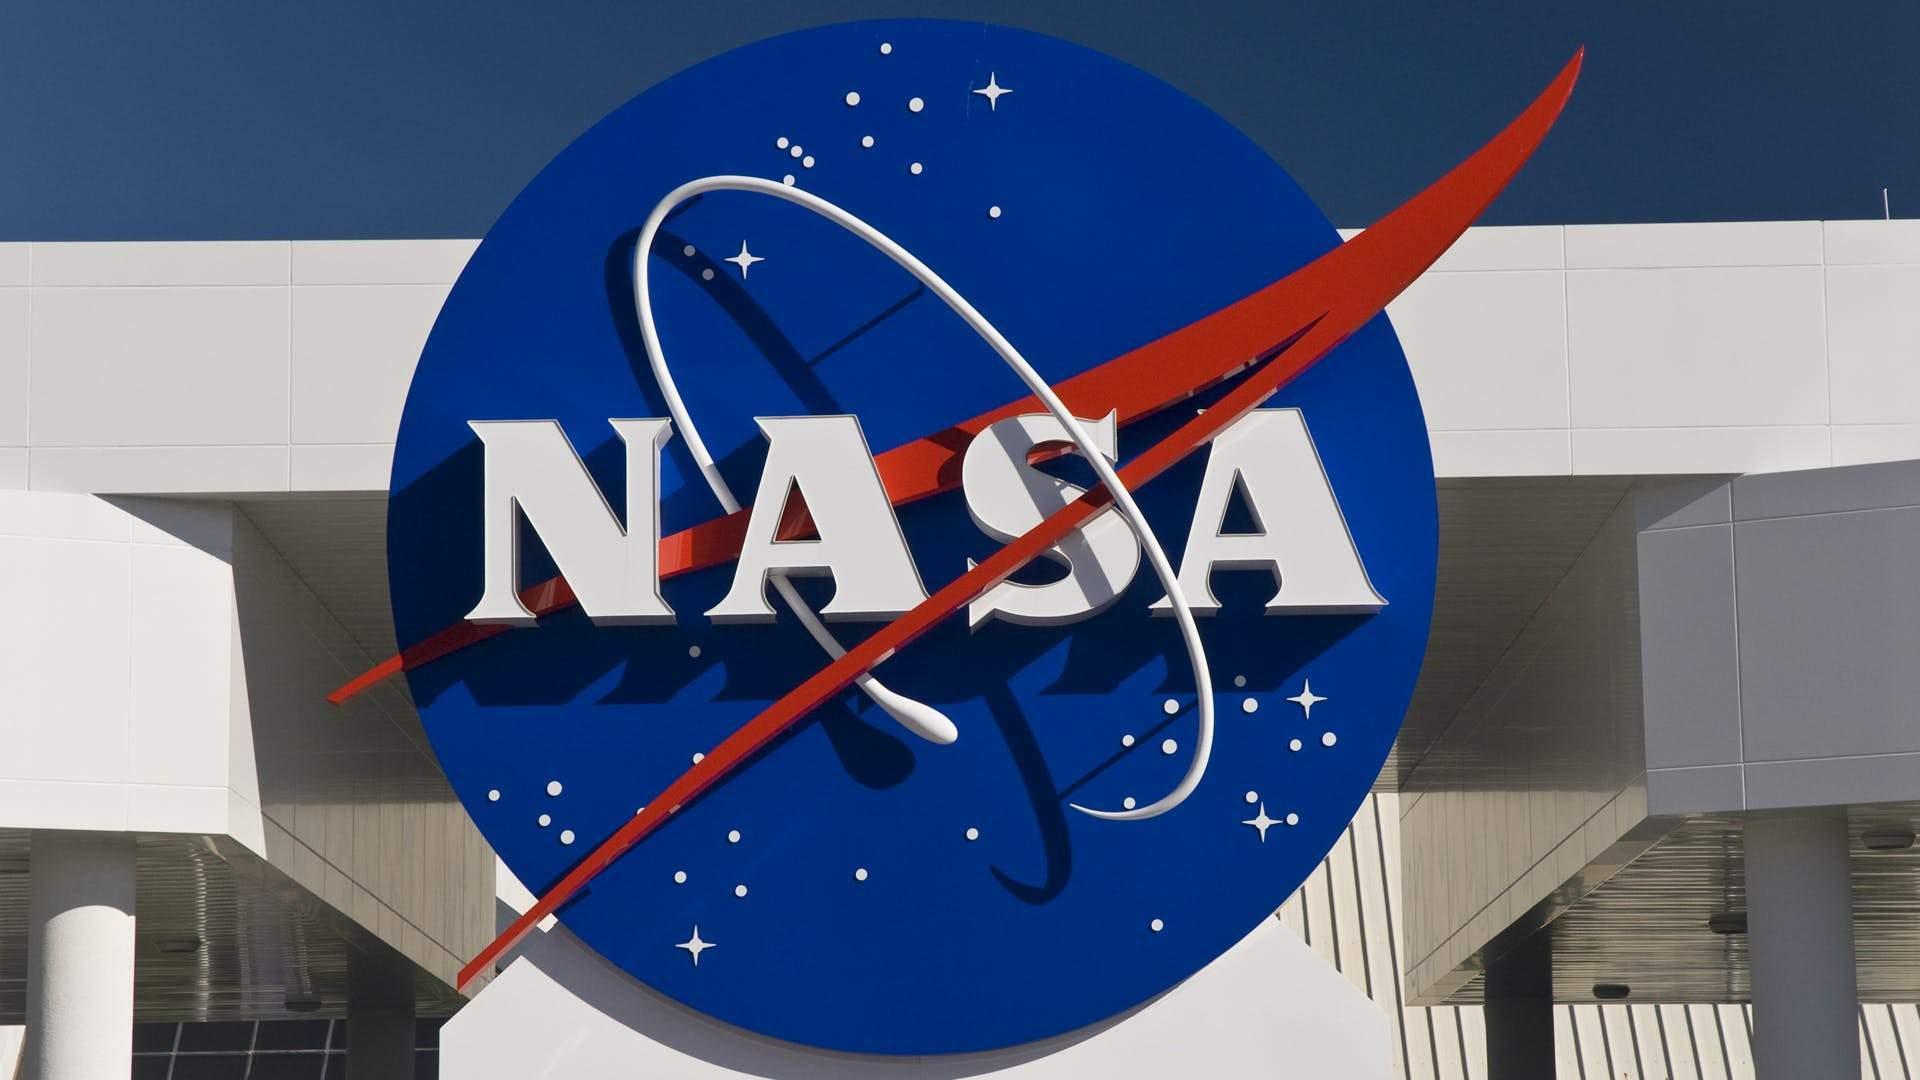 NASA prestane používať rasistické názvy